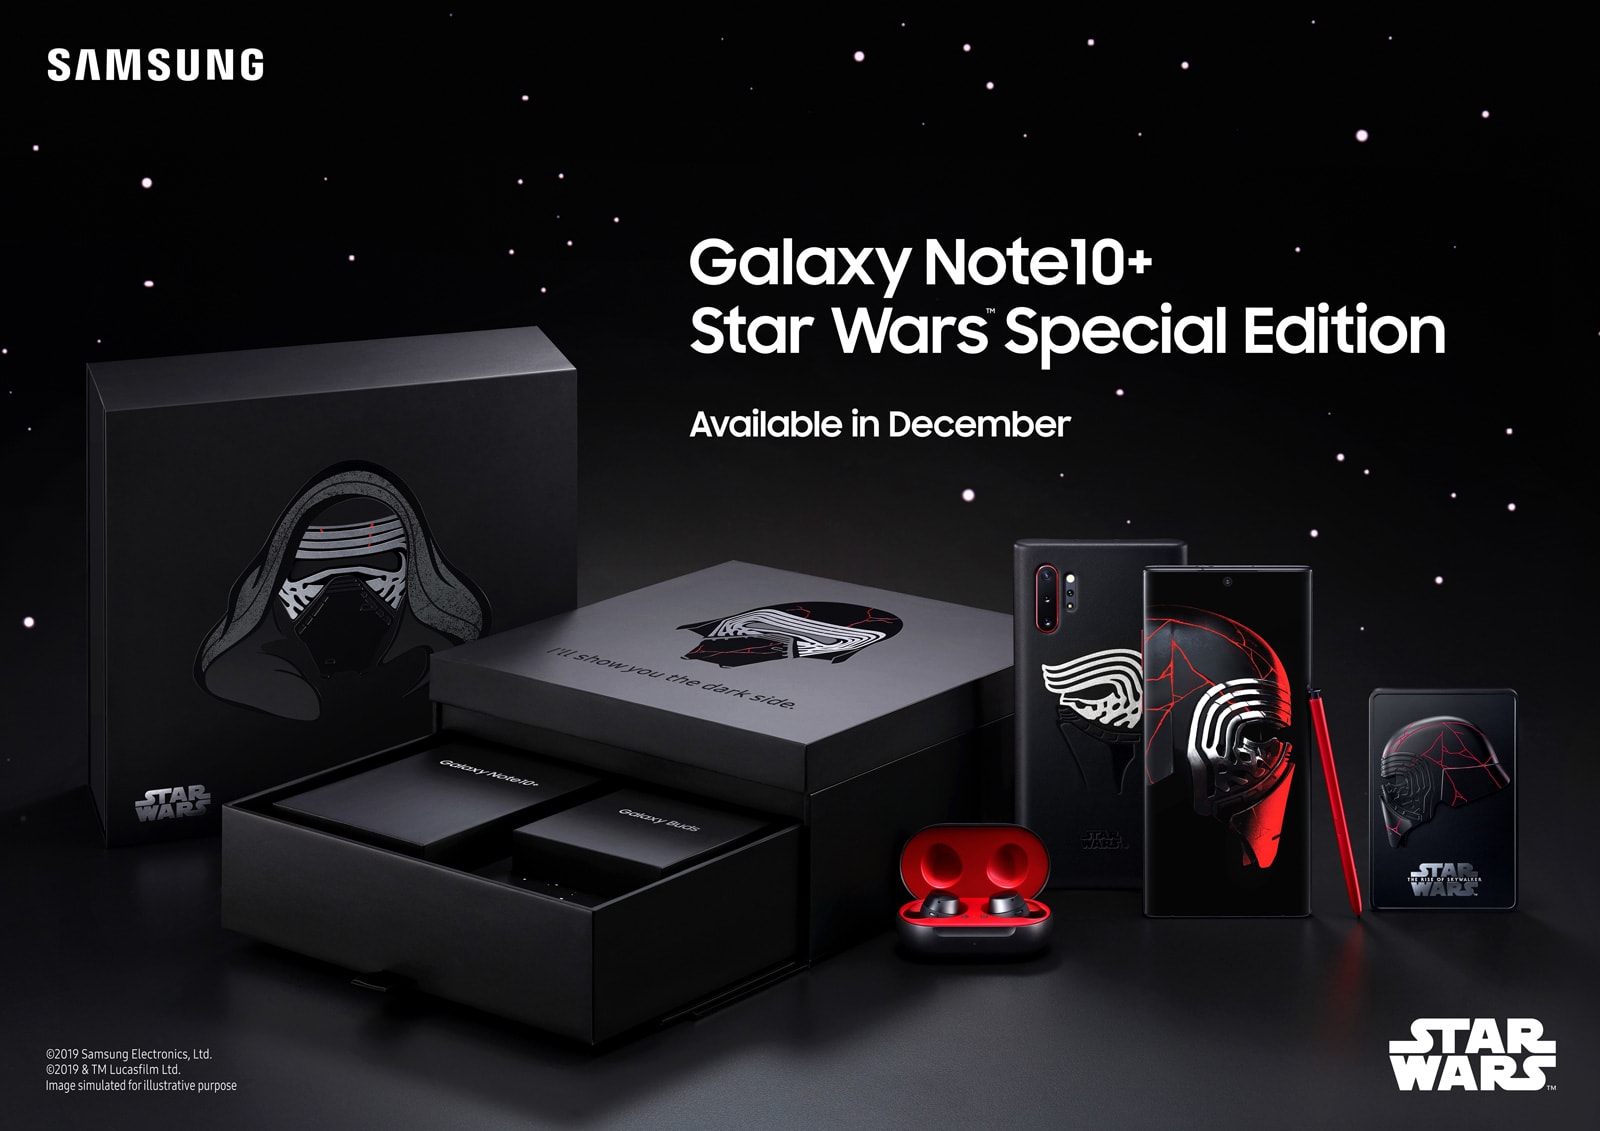 Samsung Galaxy Note 10+ 'Star Wars' Special Edition bundle